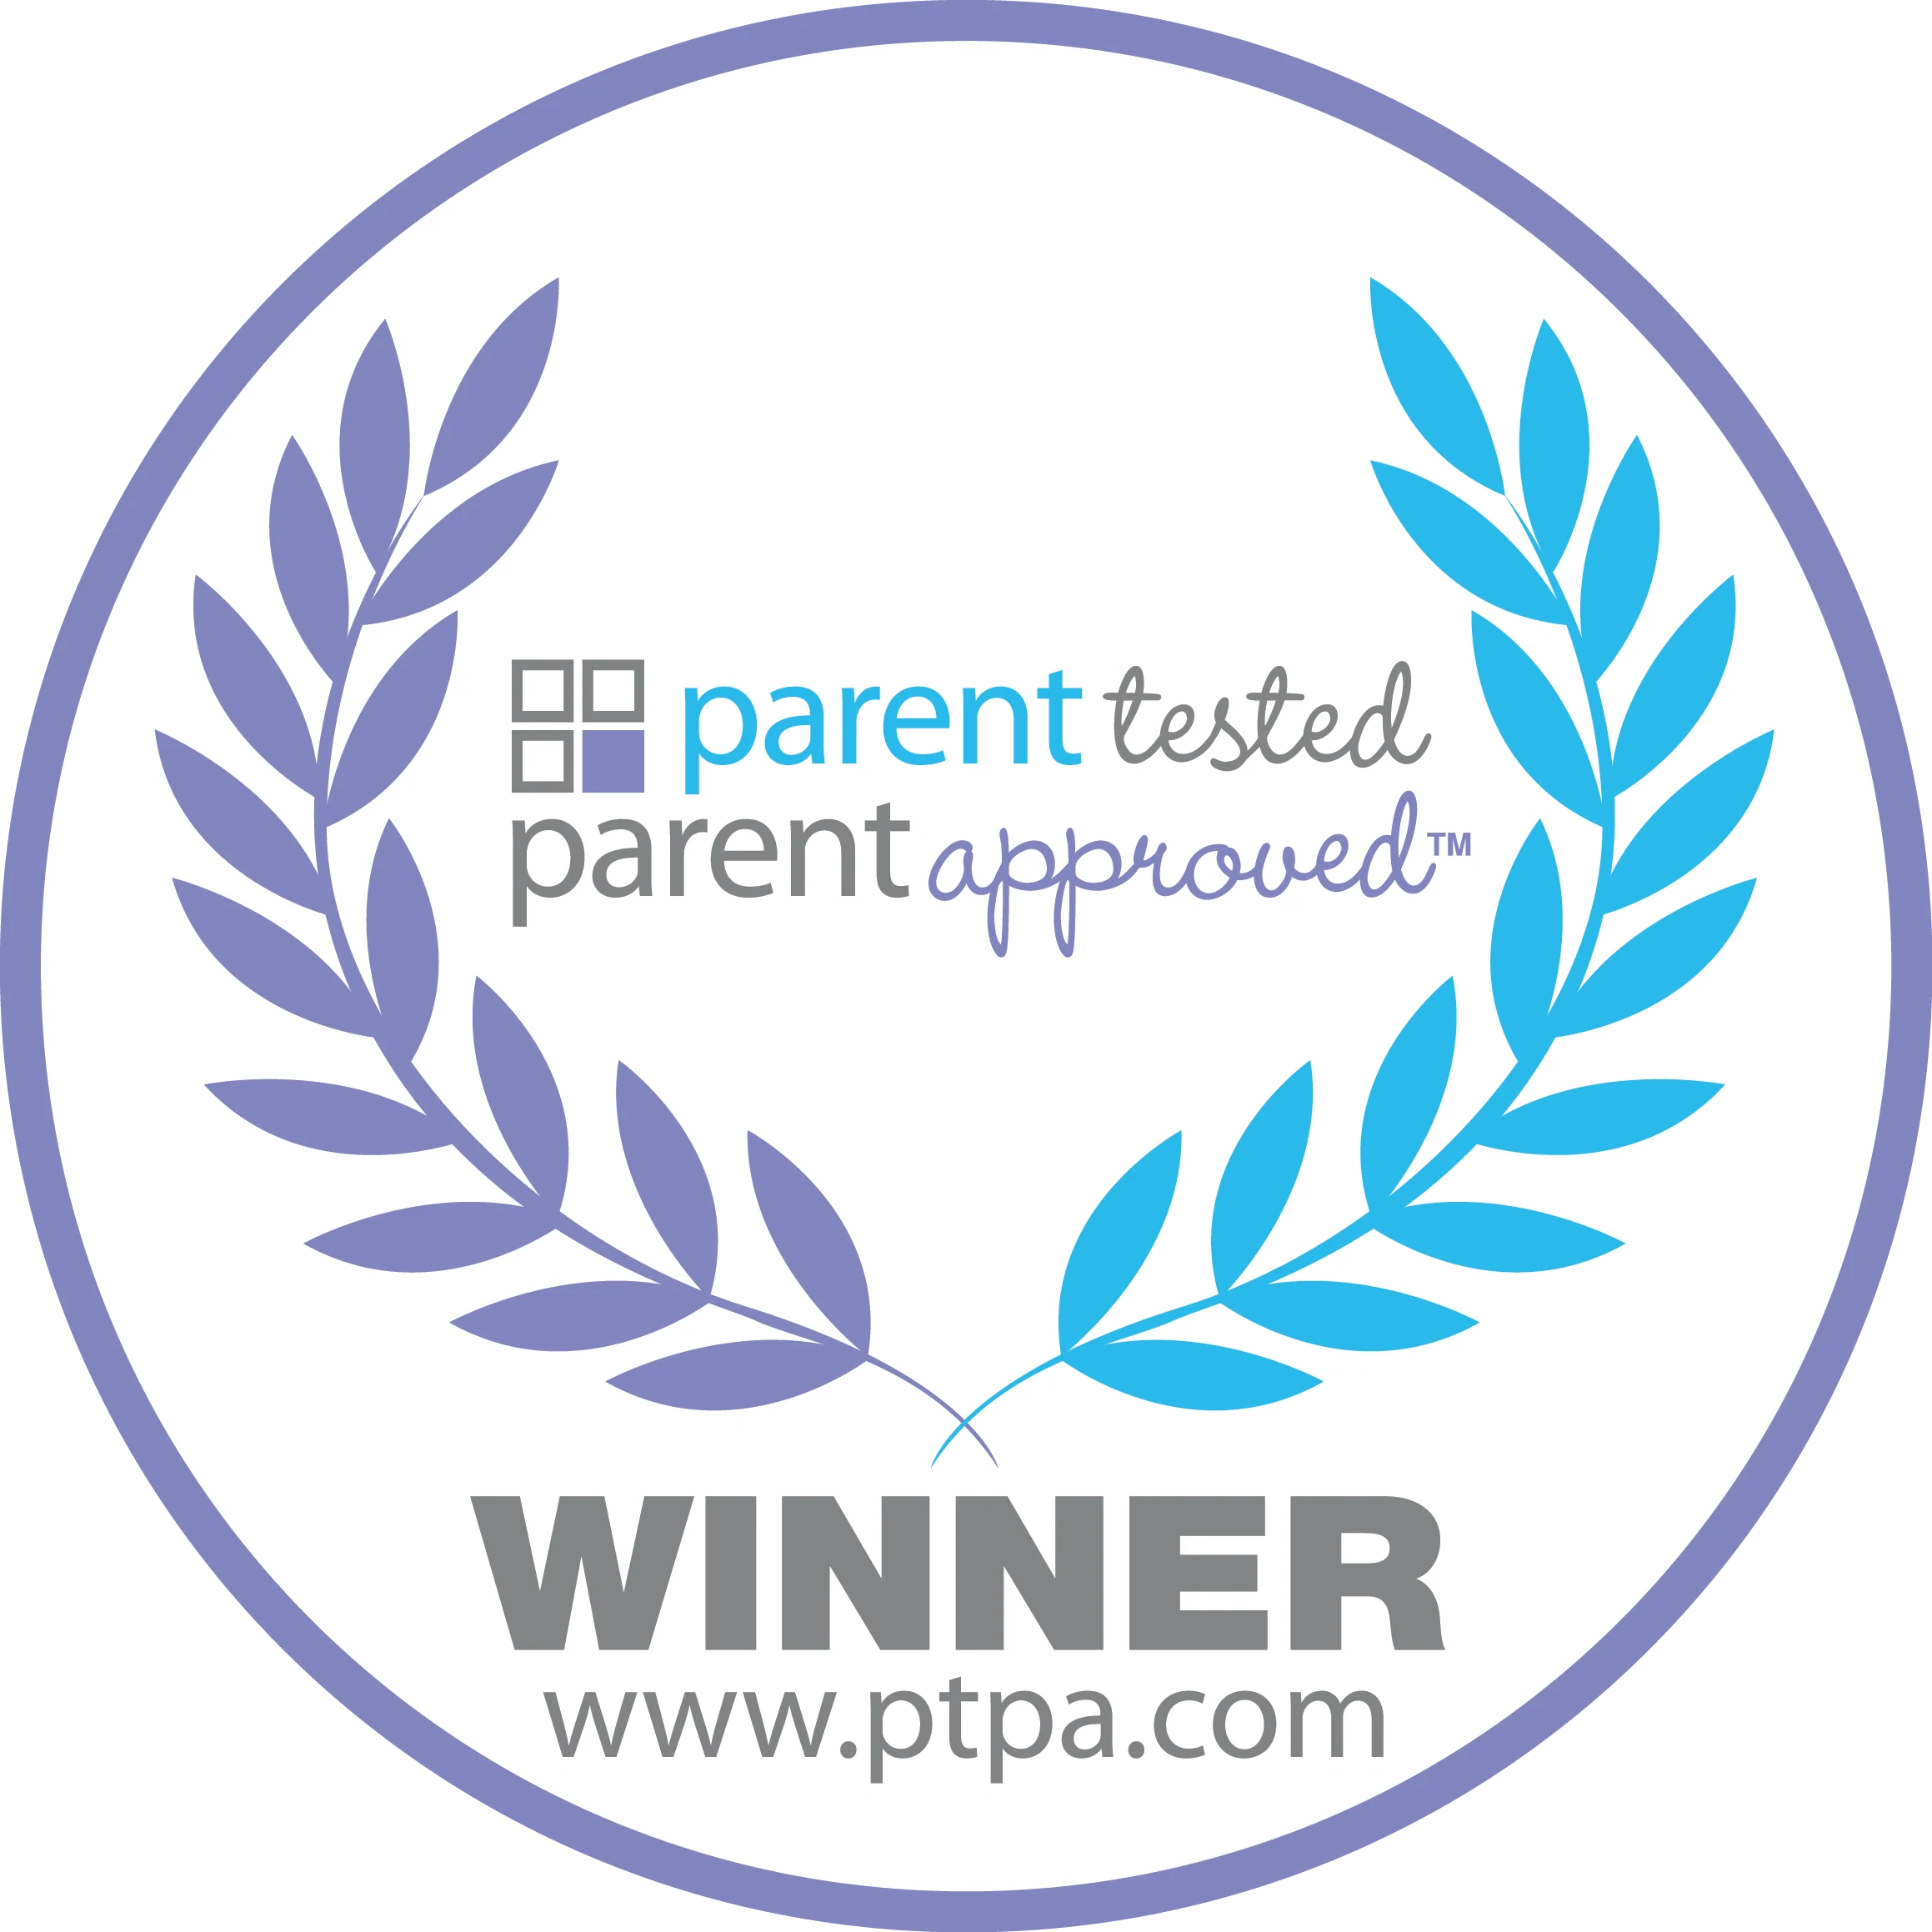 PTPA-Seal-Of-Approval-Award_a7bd1a95-507b-4164-b047-9002bab4a4f8